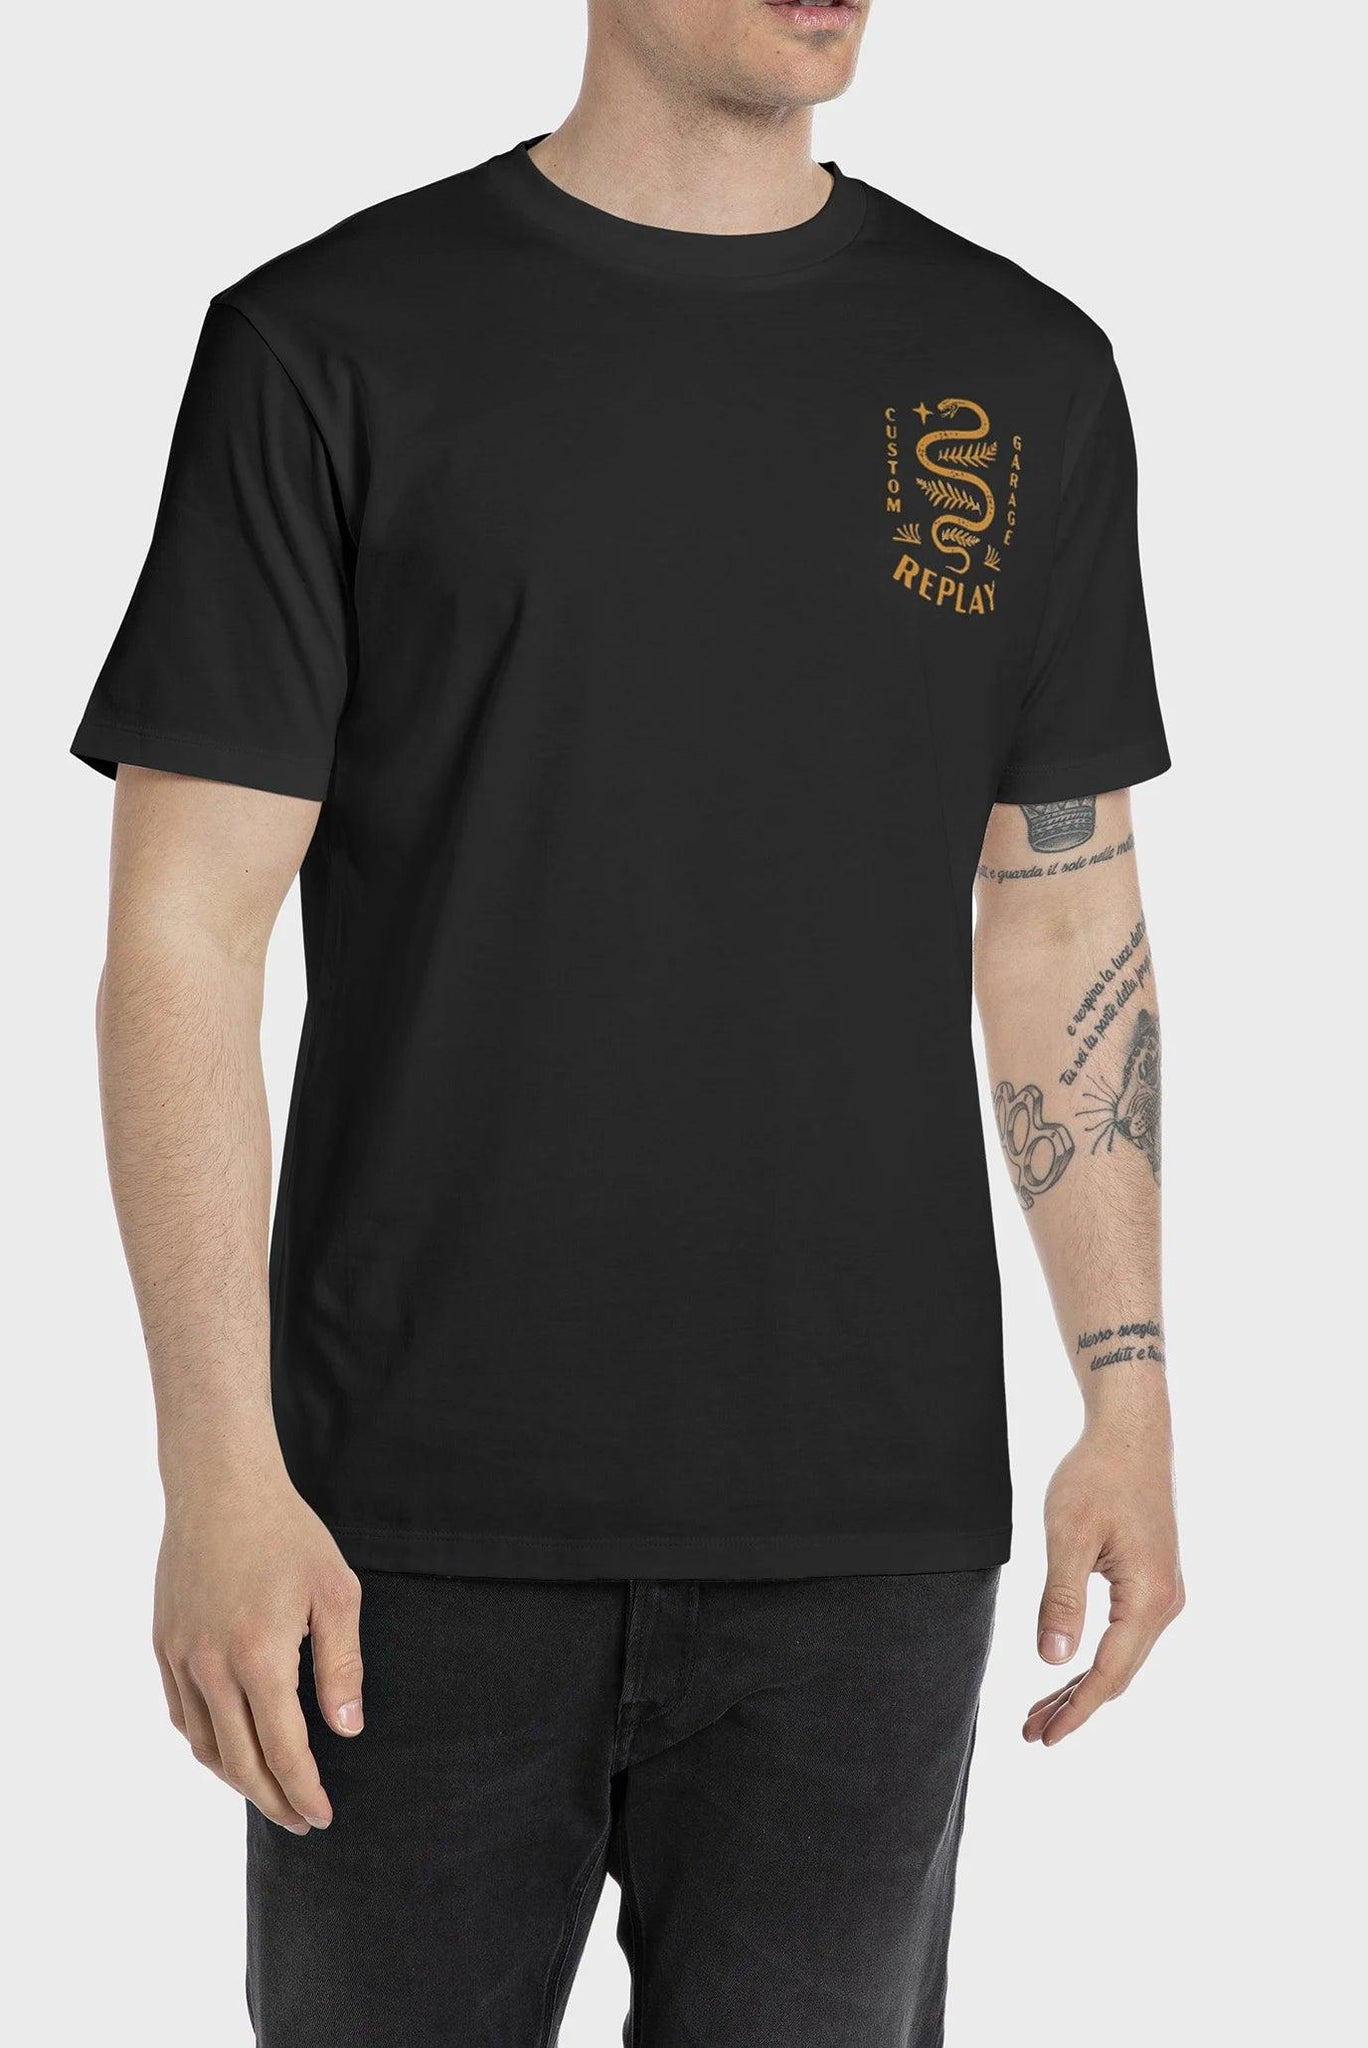 Camiseta Replay con Estampado Custom Garage y Serpiente - ECRU